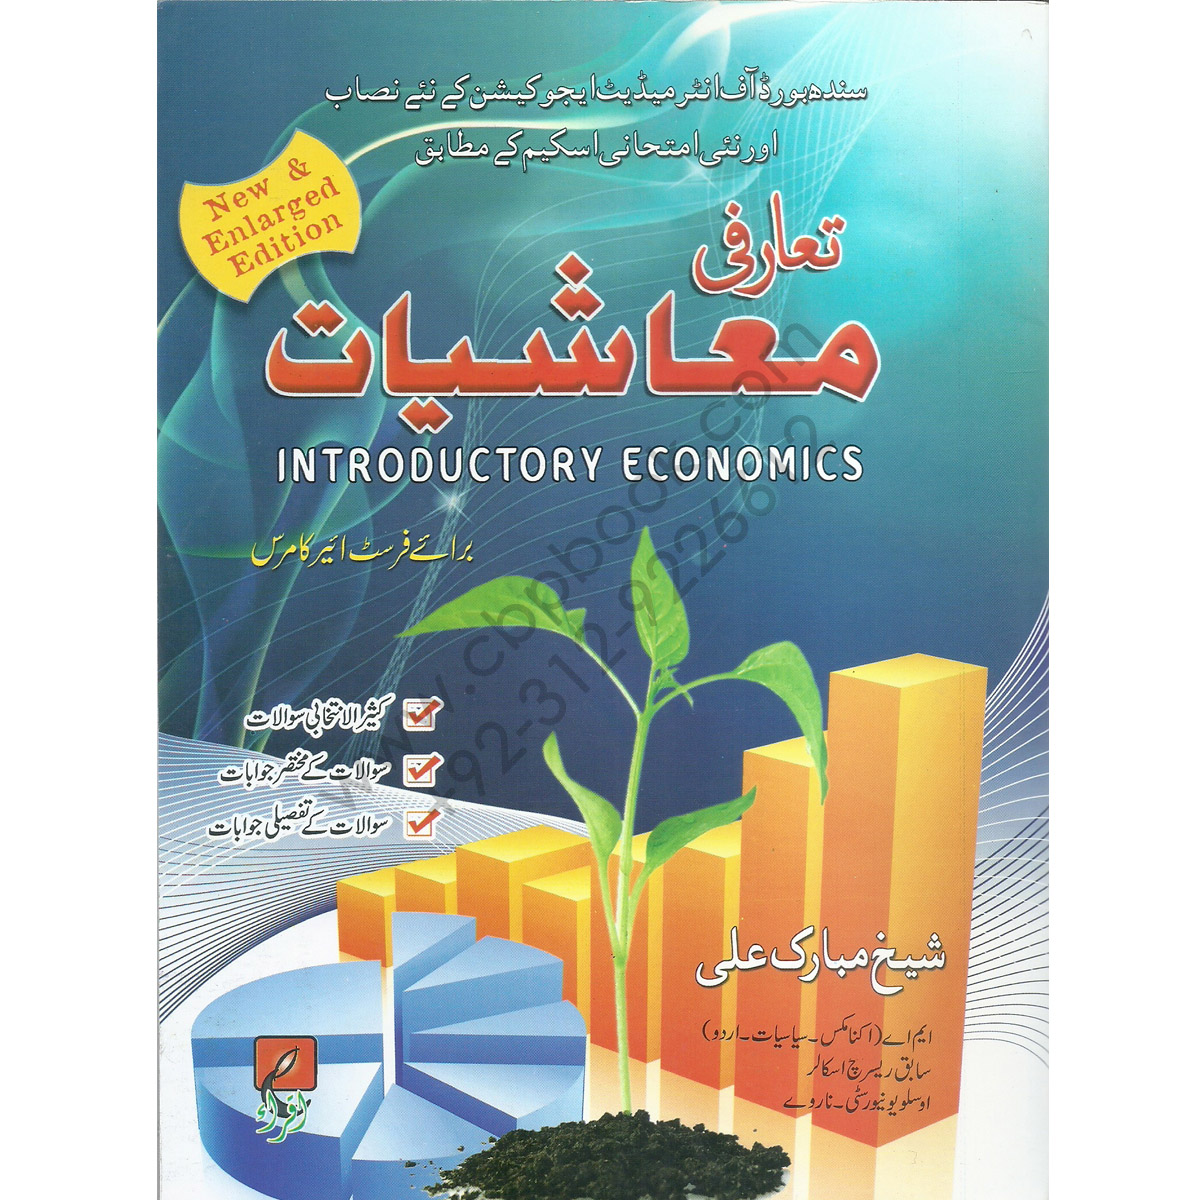 Economics book in urdu pdf